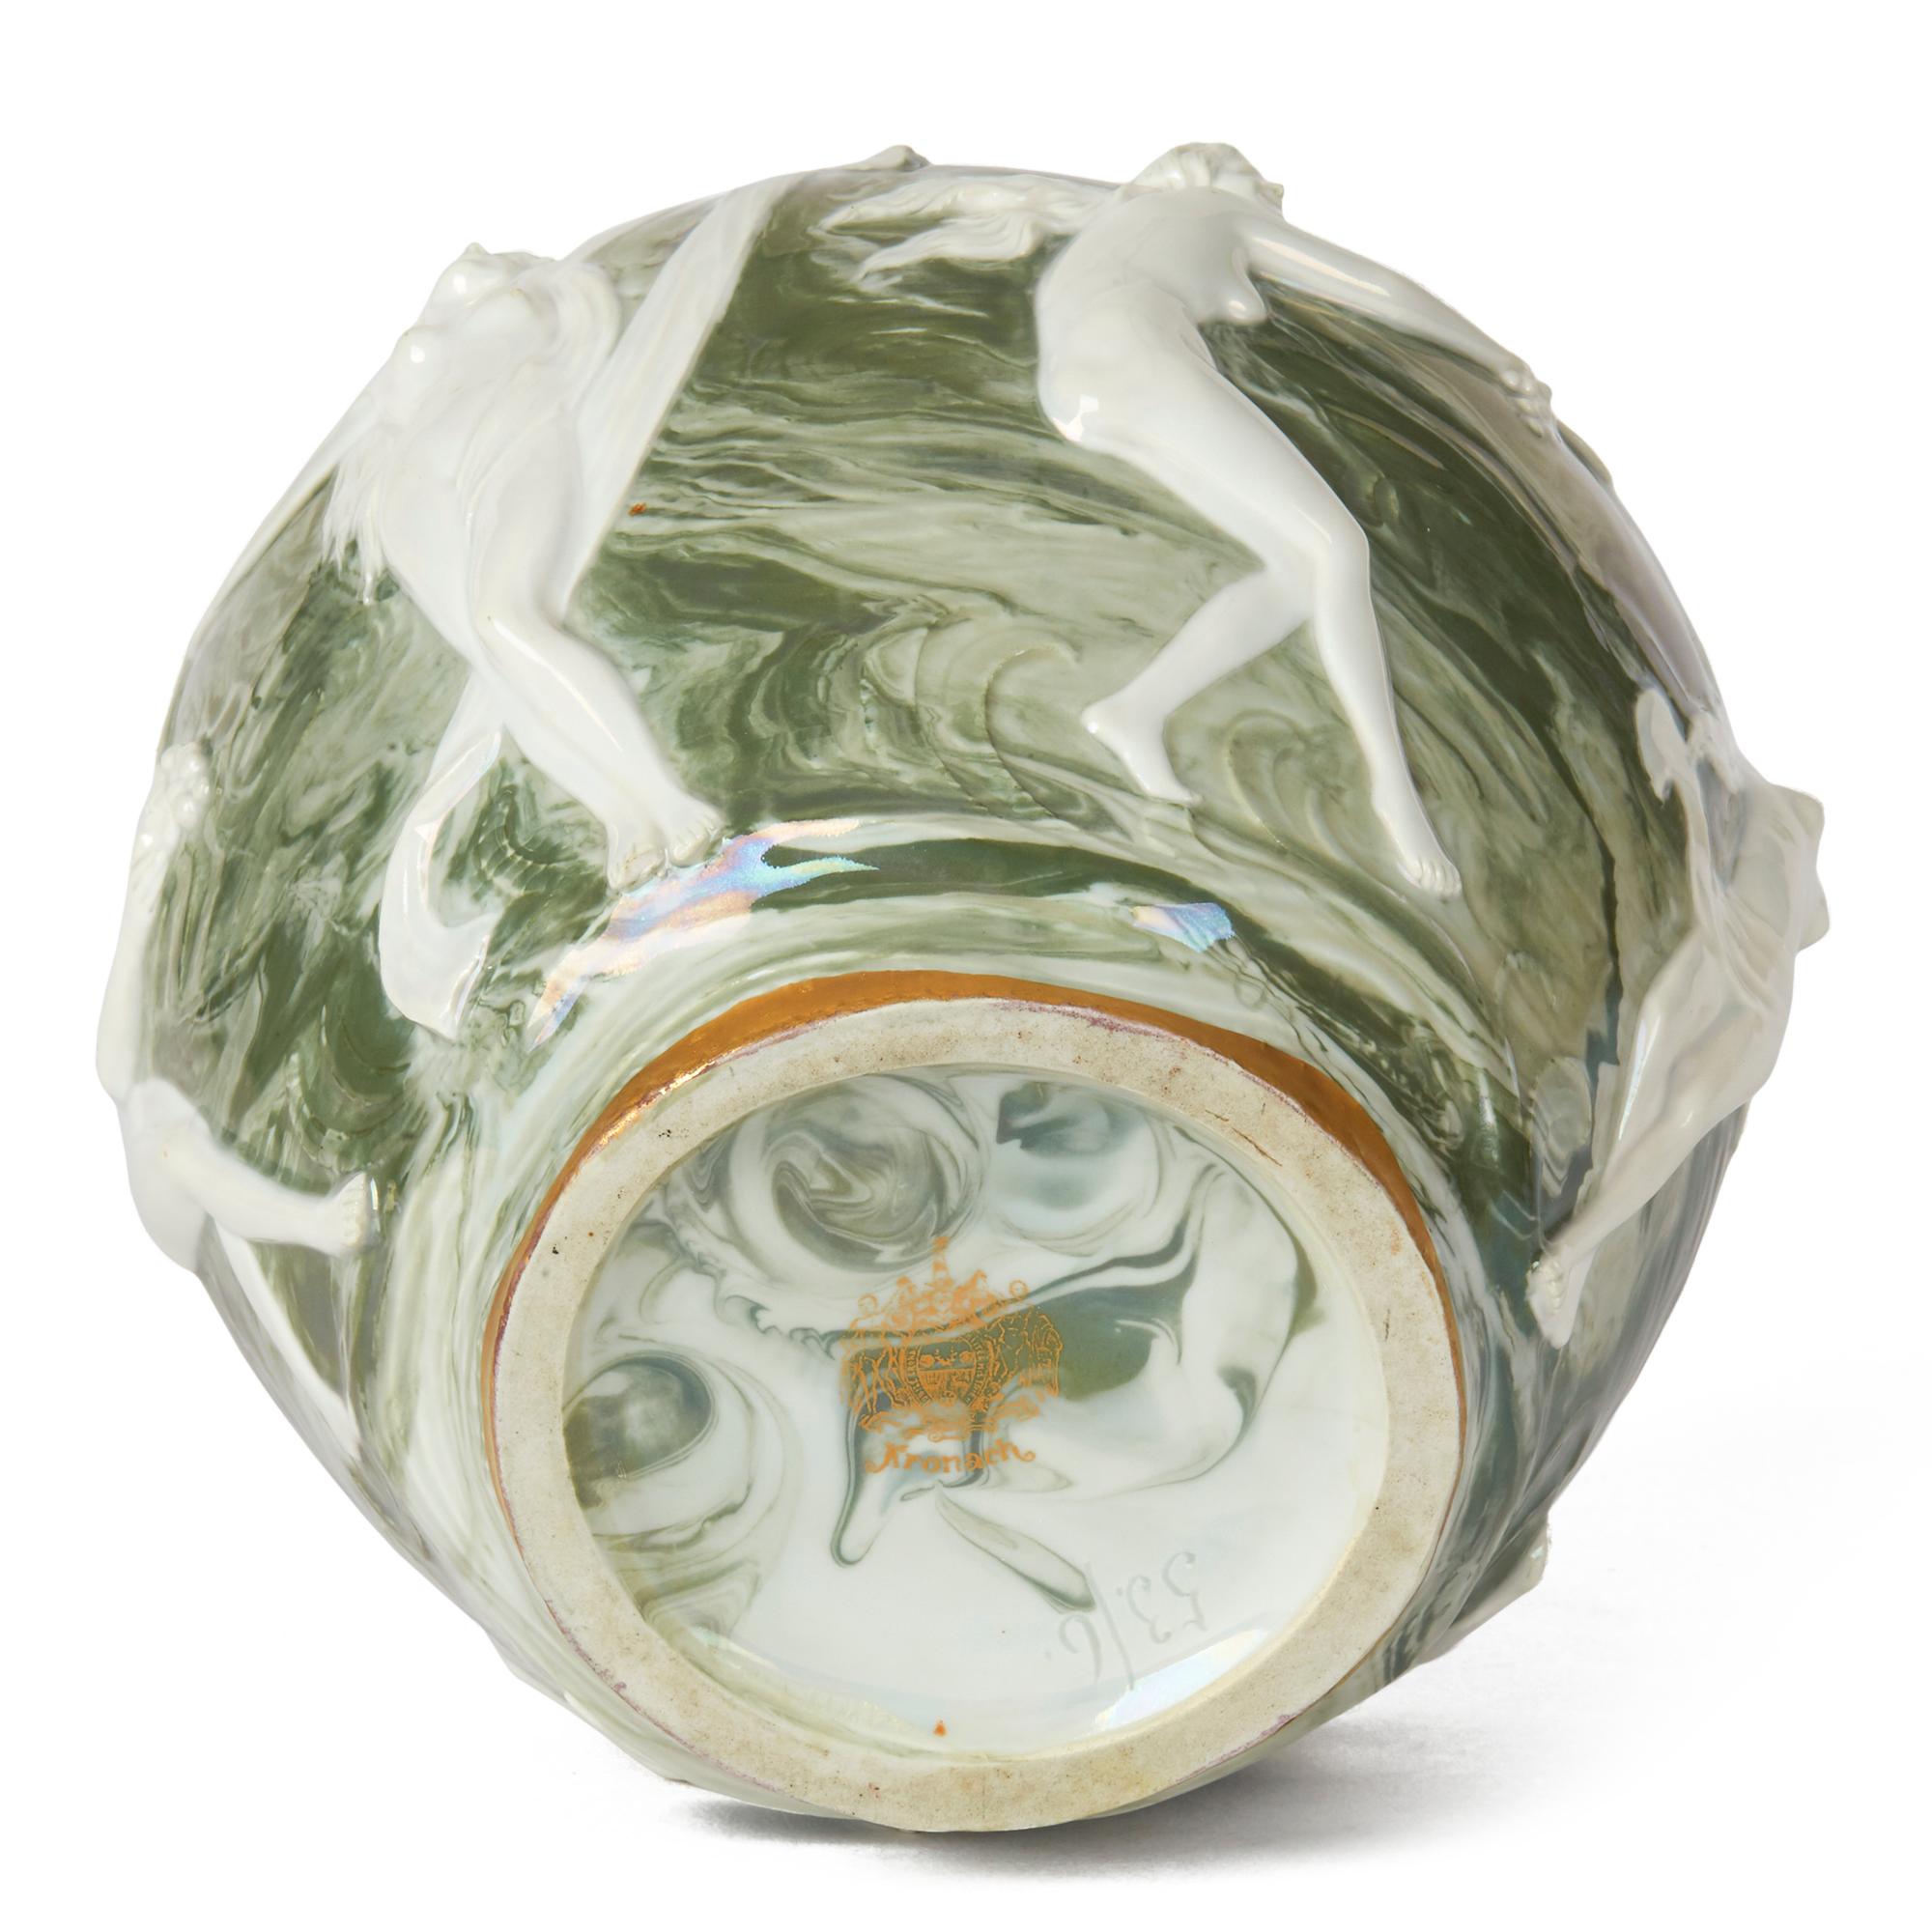 Eine wunderschöne Jugendstil-Porzellanvase mit tanzenden und musizierenden nackten Jungfrauen, entworfen von Adolf Oppel (1840-1922). Die runde, bauchige Vase steht auf einem schmalen, abgerundeten Sockel mit einem kurzen, trichterförmigen Hals. Der